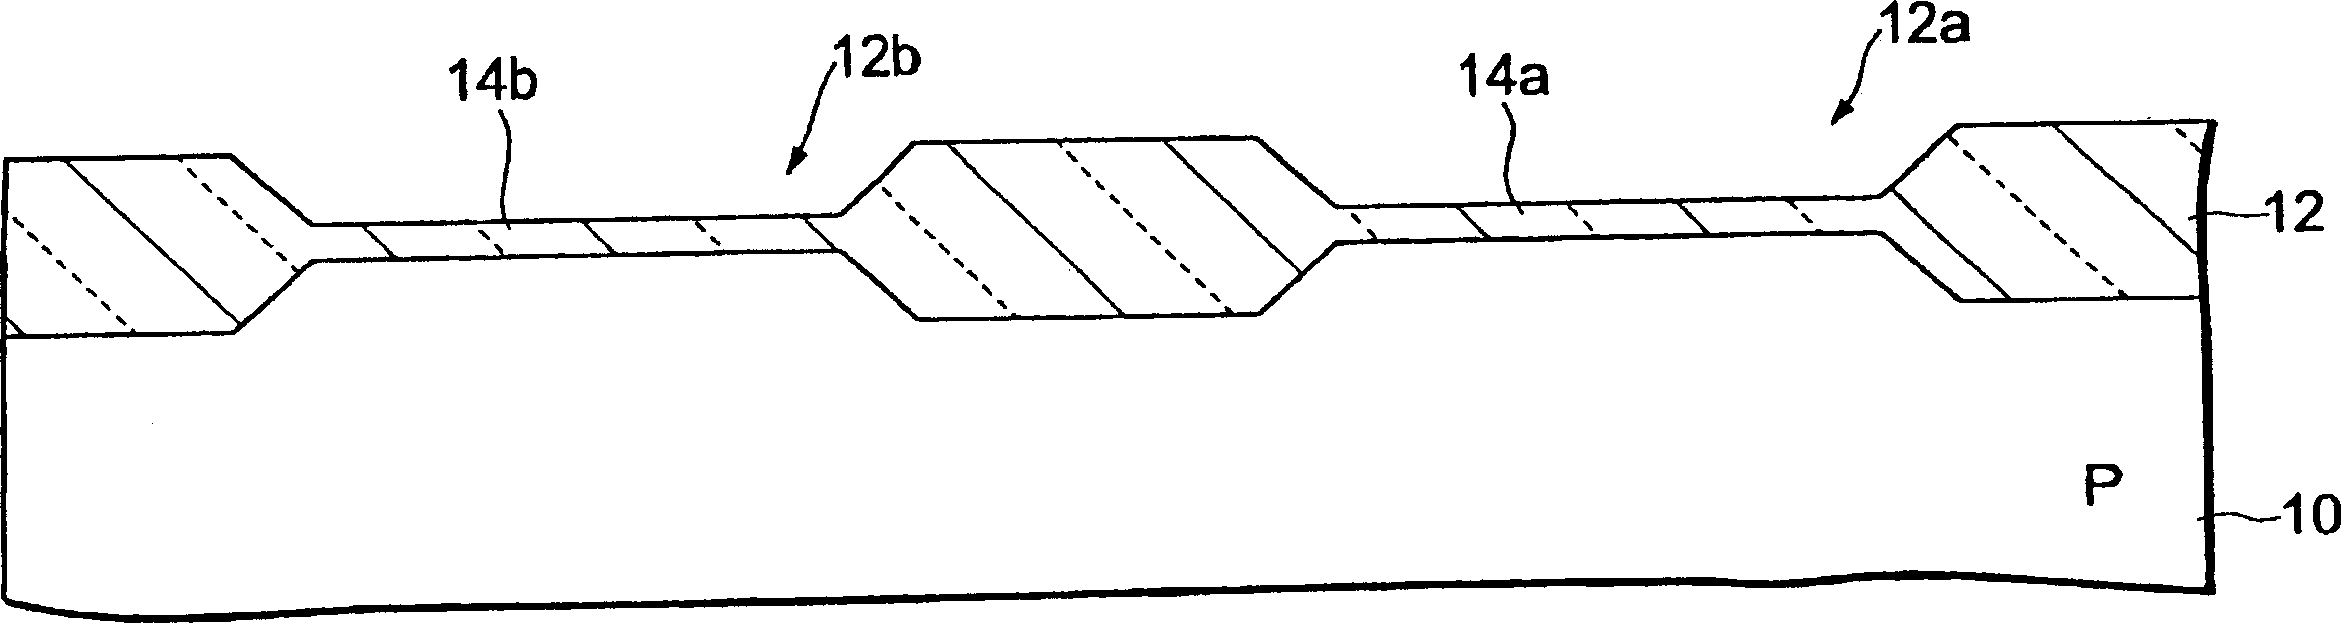 Manufacturing method of grating oxide film